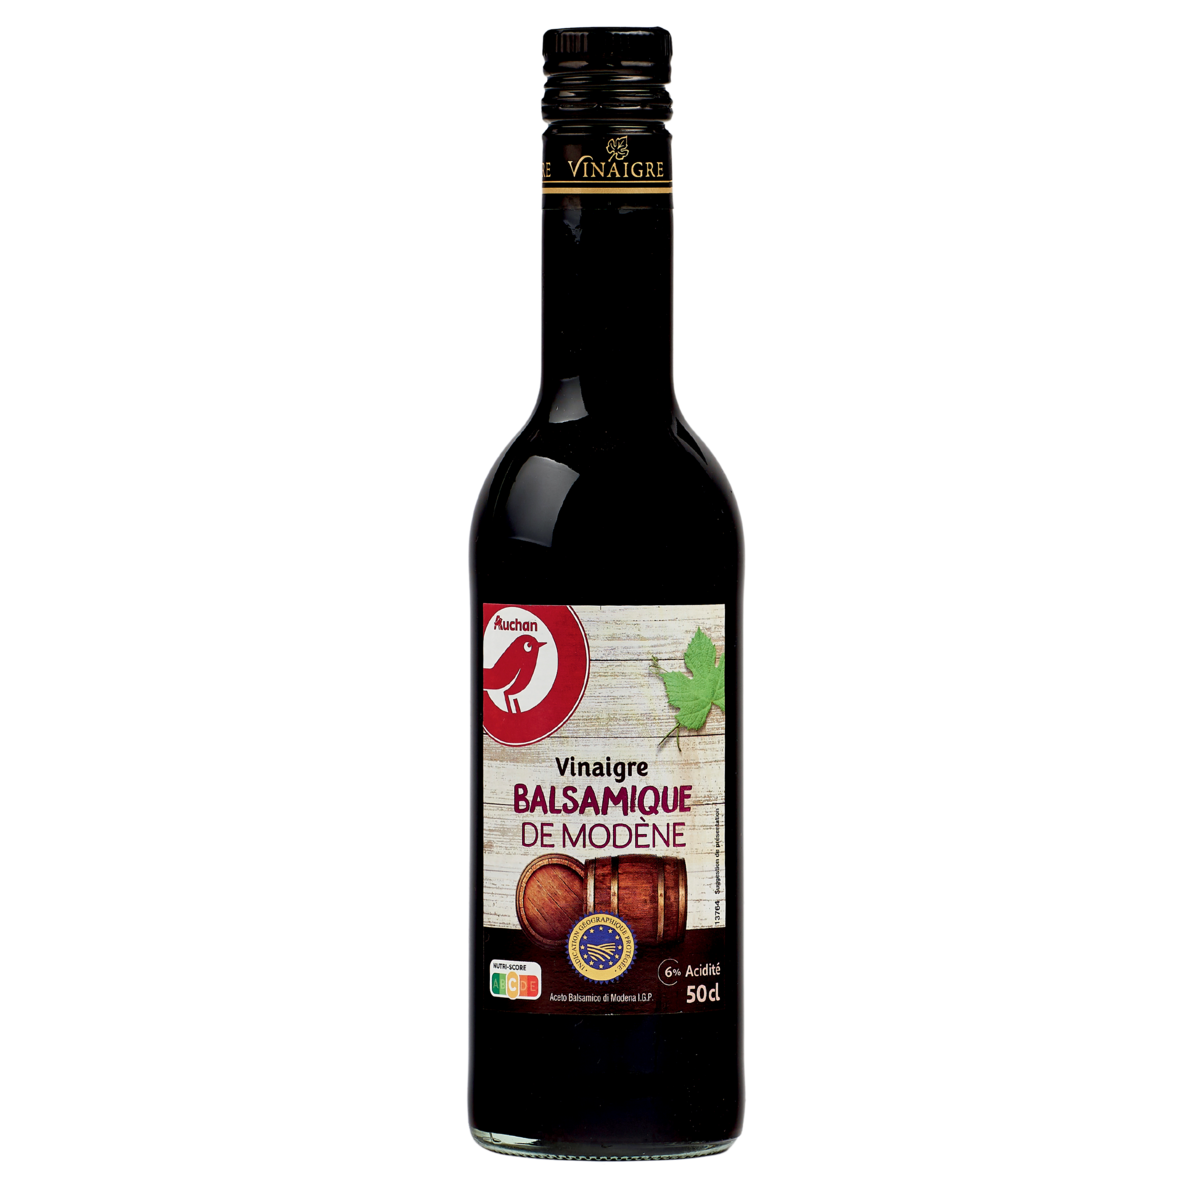 AUCHAN Vinaigre balsamique de Modène IGP 6% d'acidité 50cl